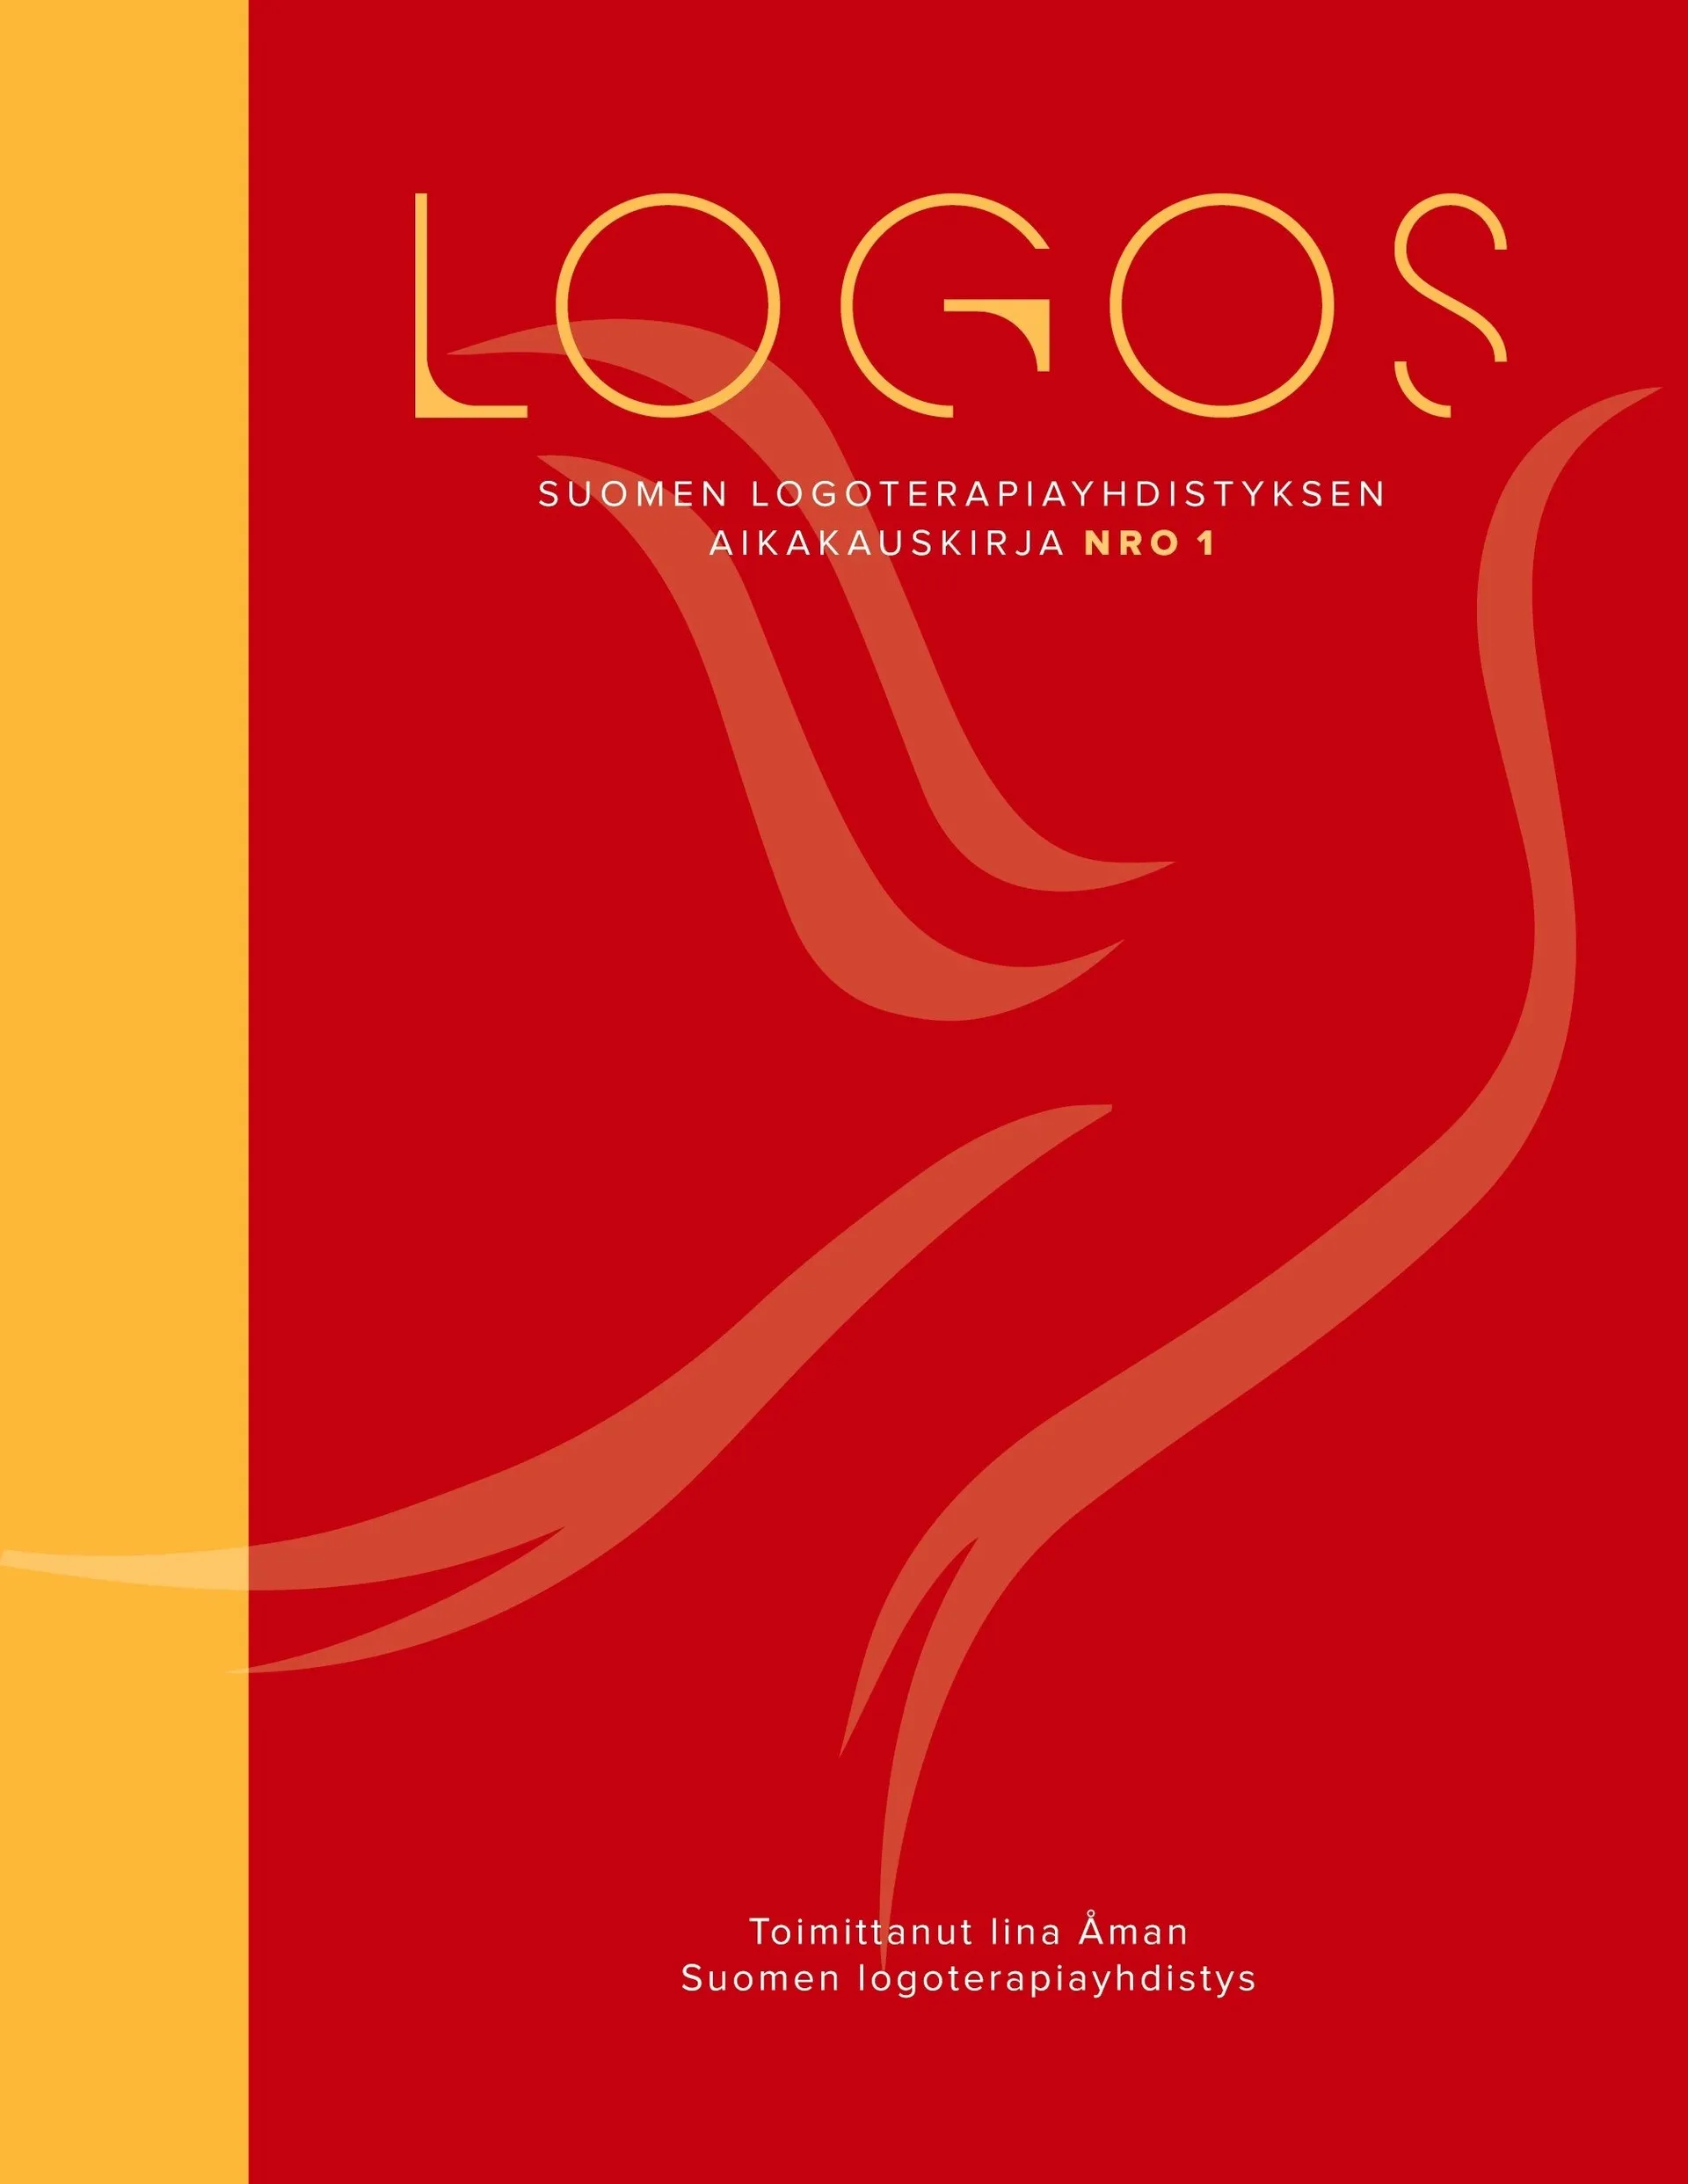 Åman, Logos - Suomen logoterapiayhdistyksen aikakauskirja nro 1